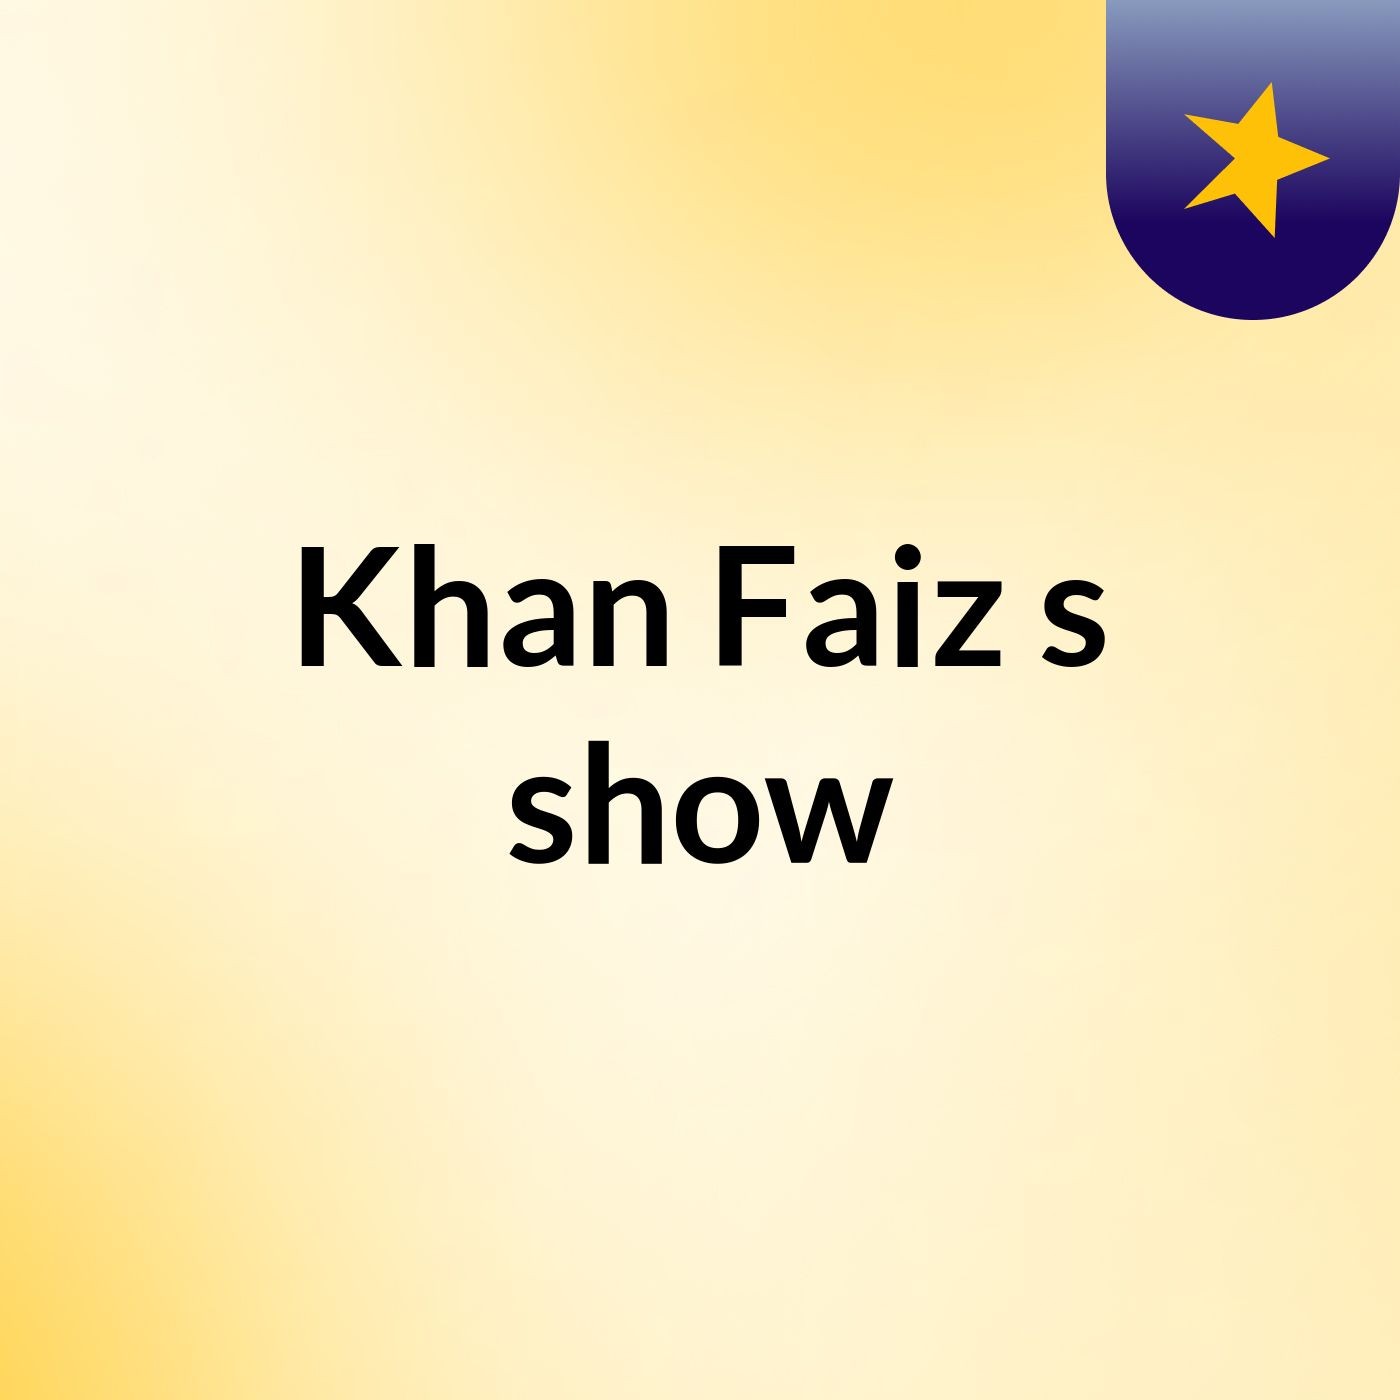 Khan Faiz's show